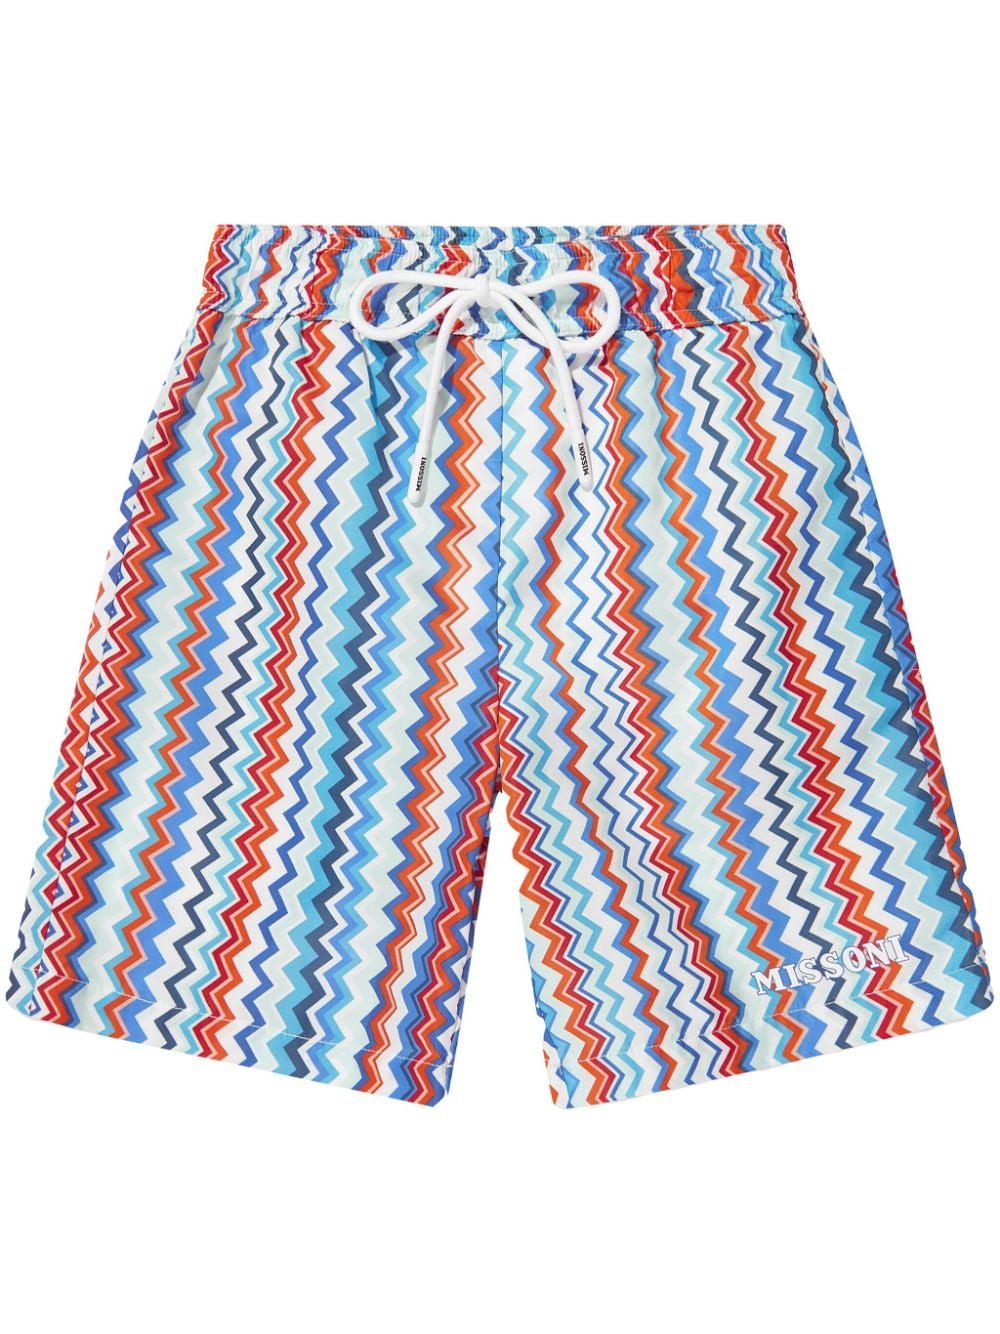 Multicolored swim shorts for boys